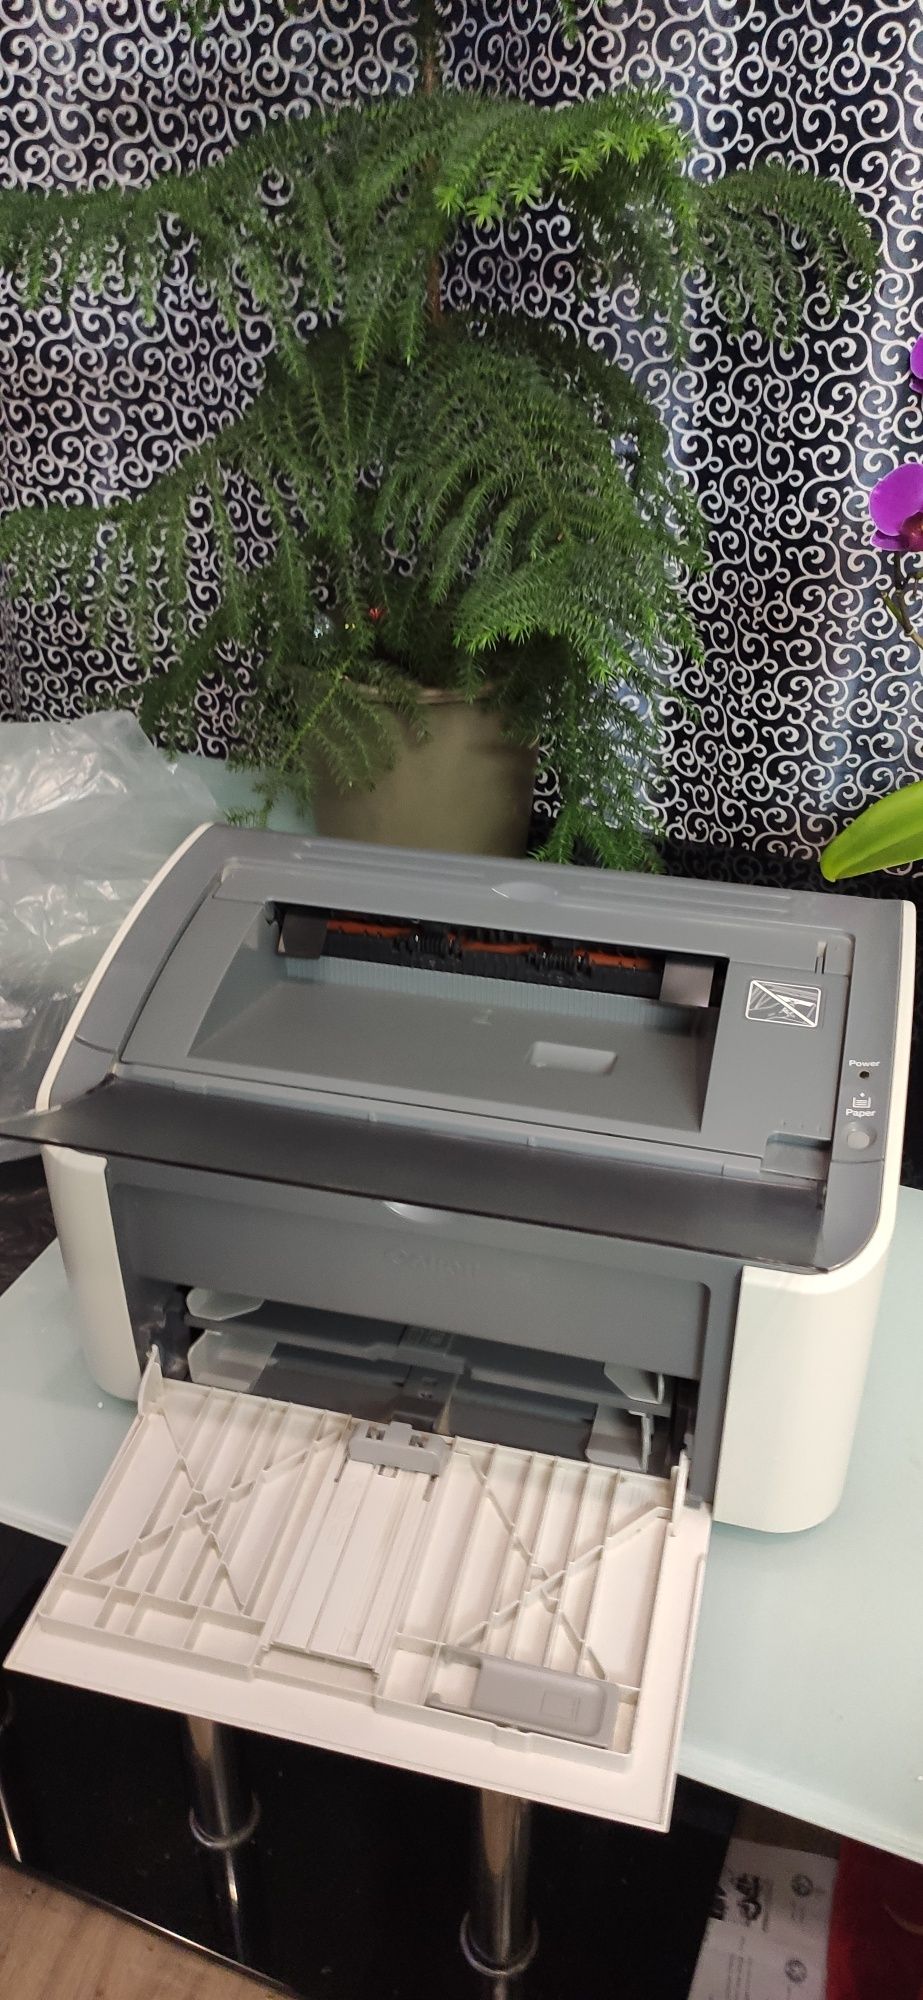 Продам лазерный принтер canon lbp 2900